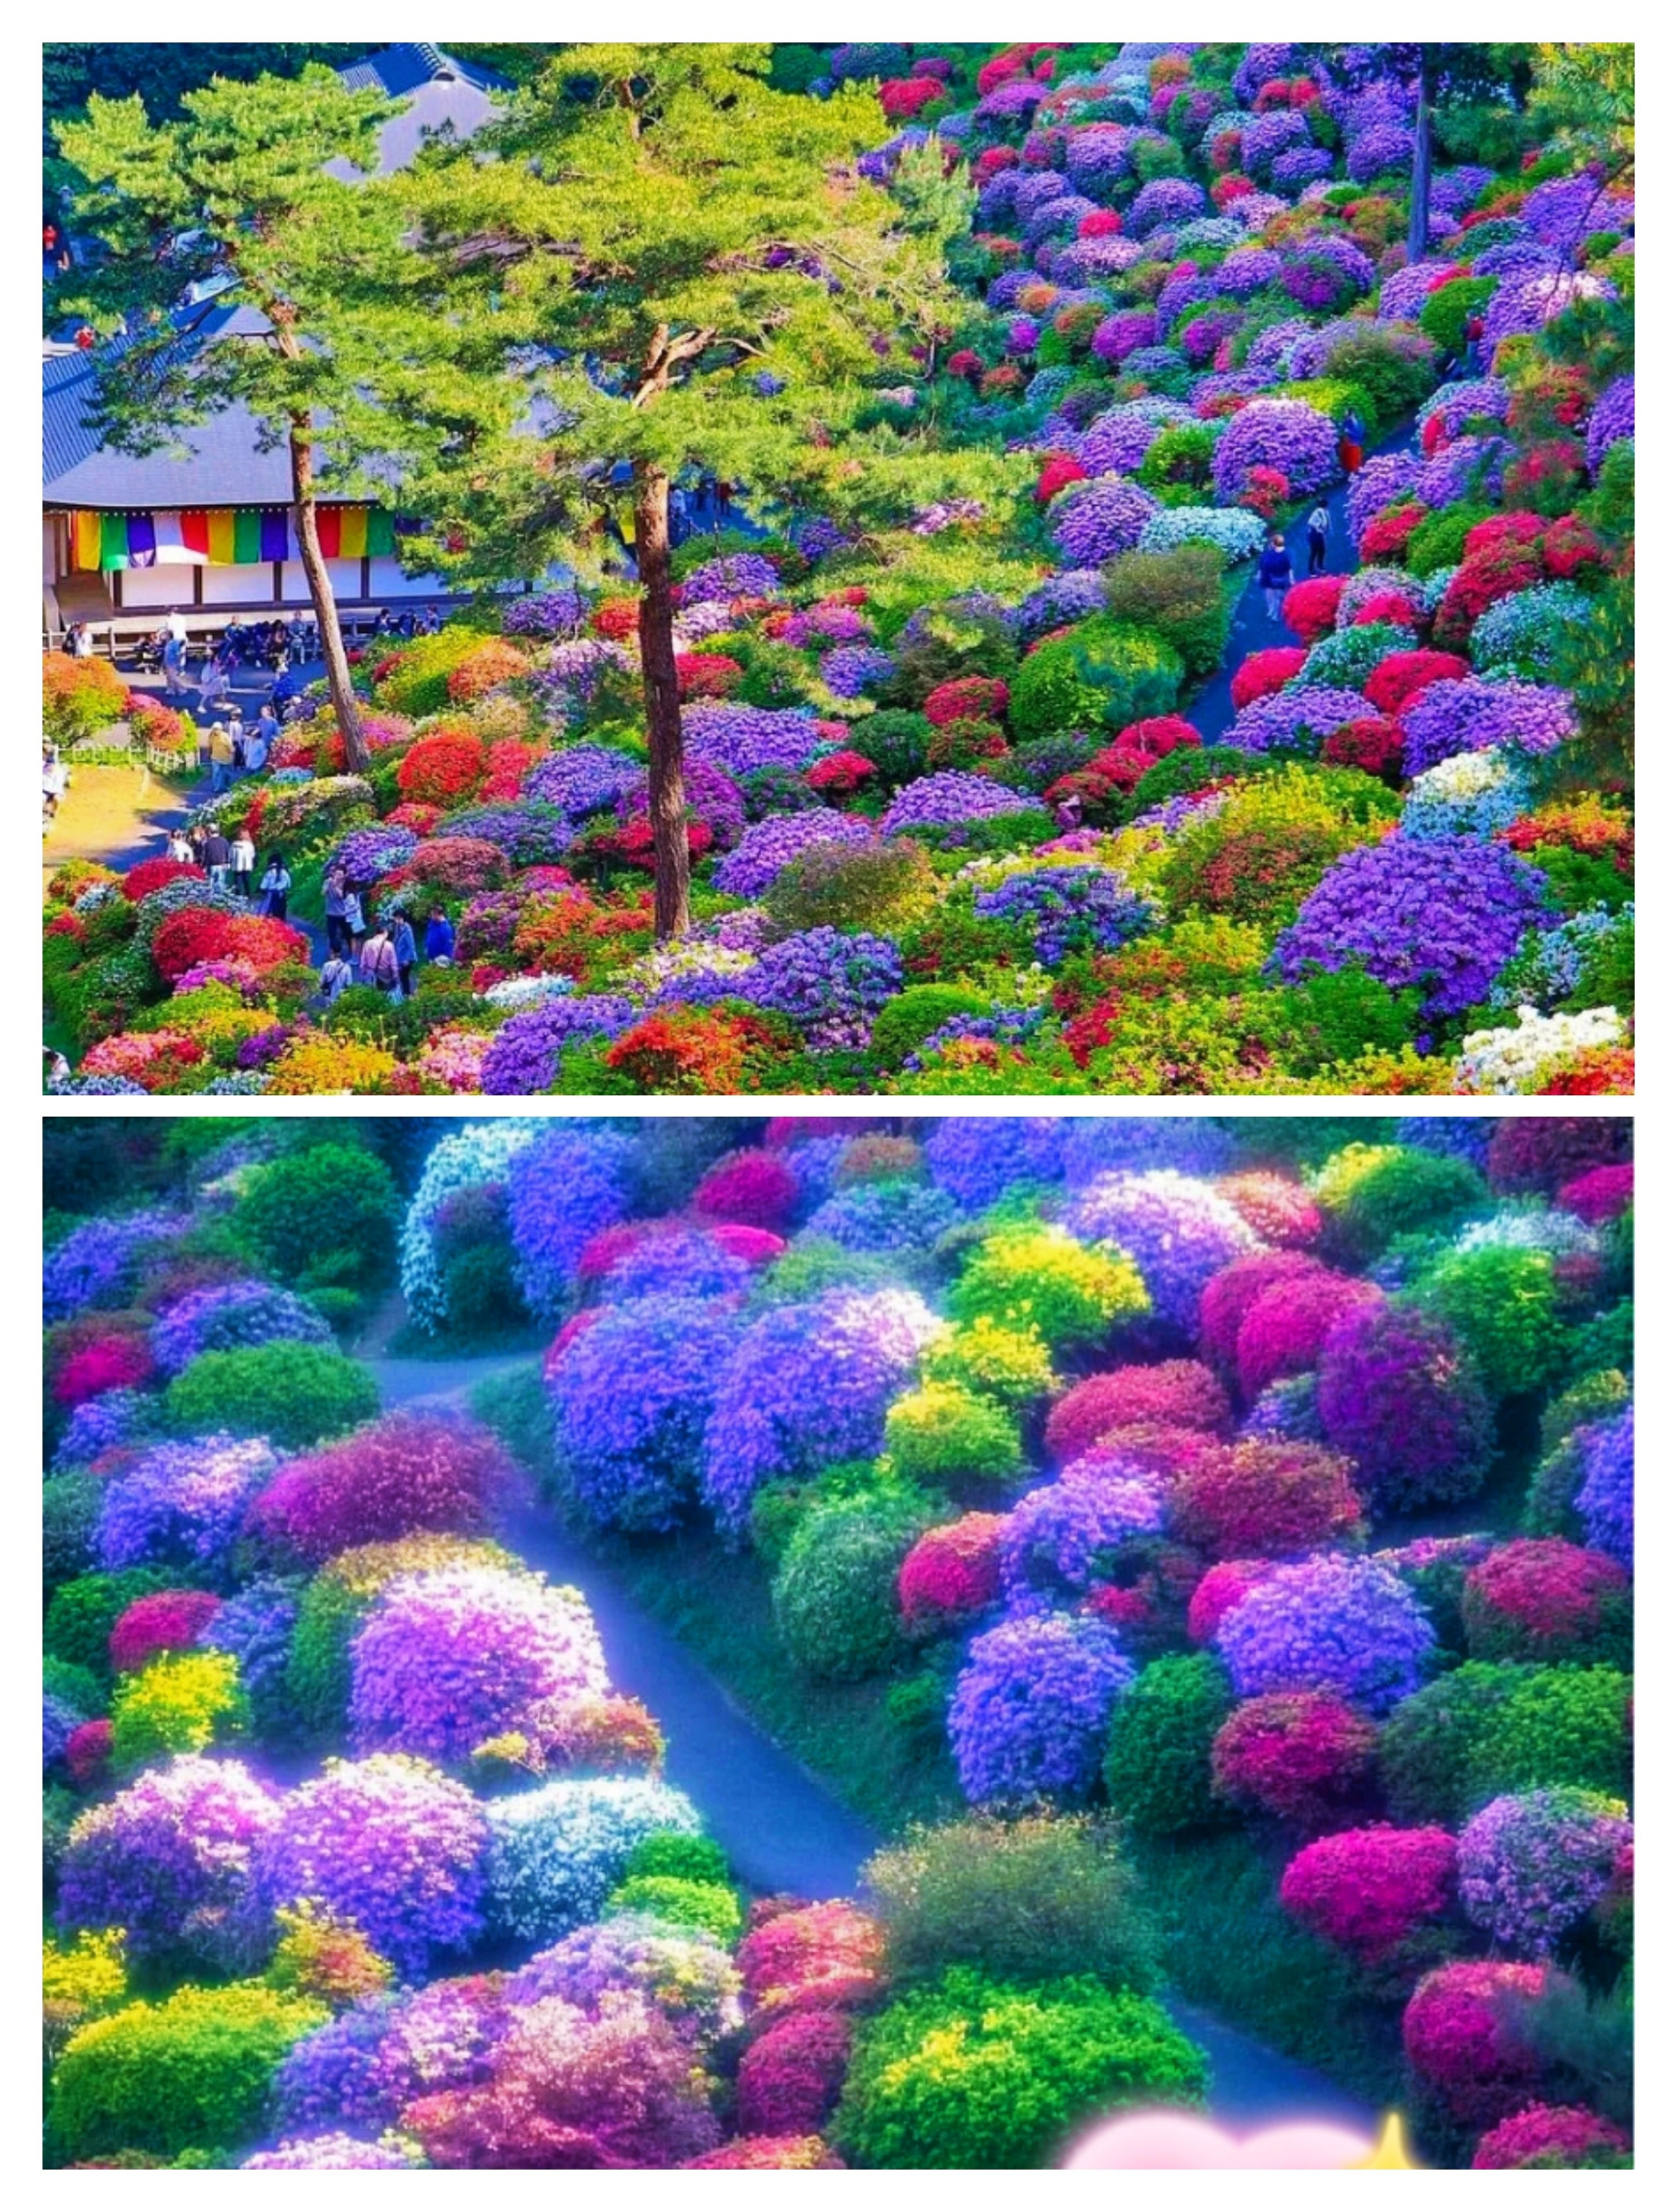 知道的人太少了!日本5 种花盛开的绝美景色